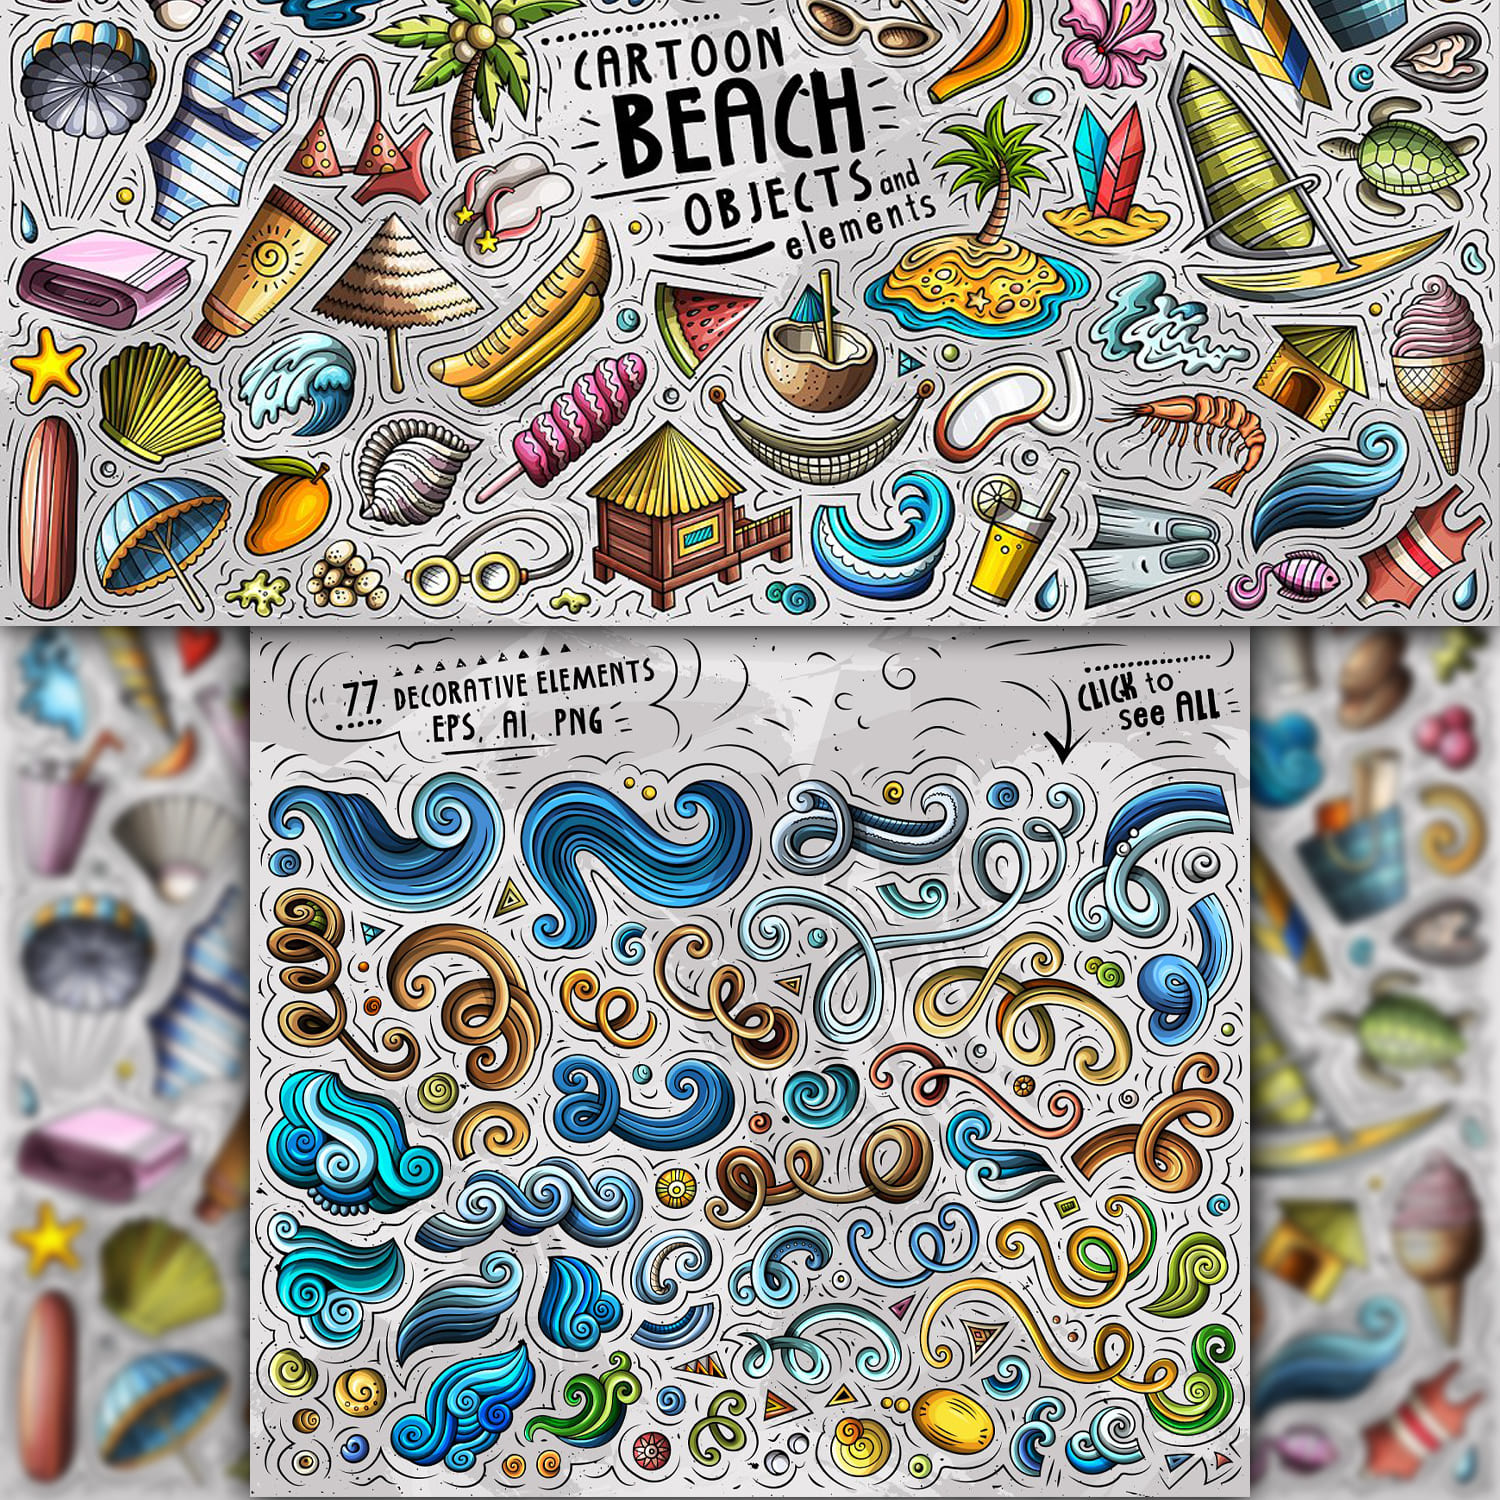 Summer Beach Cartoon Objects Set 1500 1500 2.